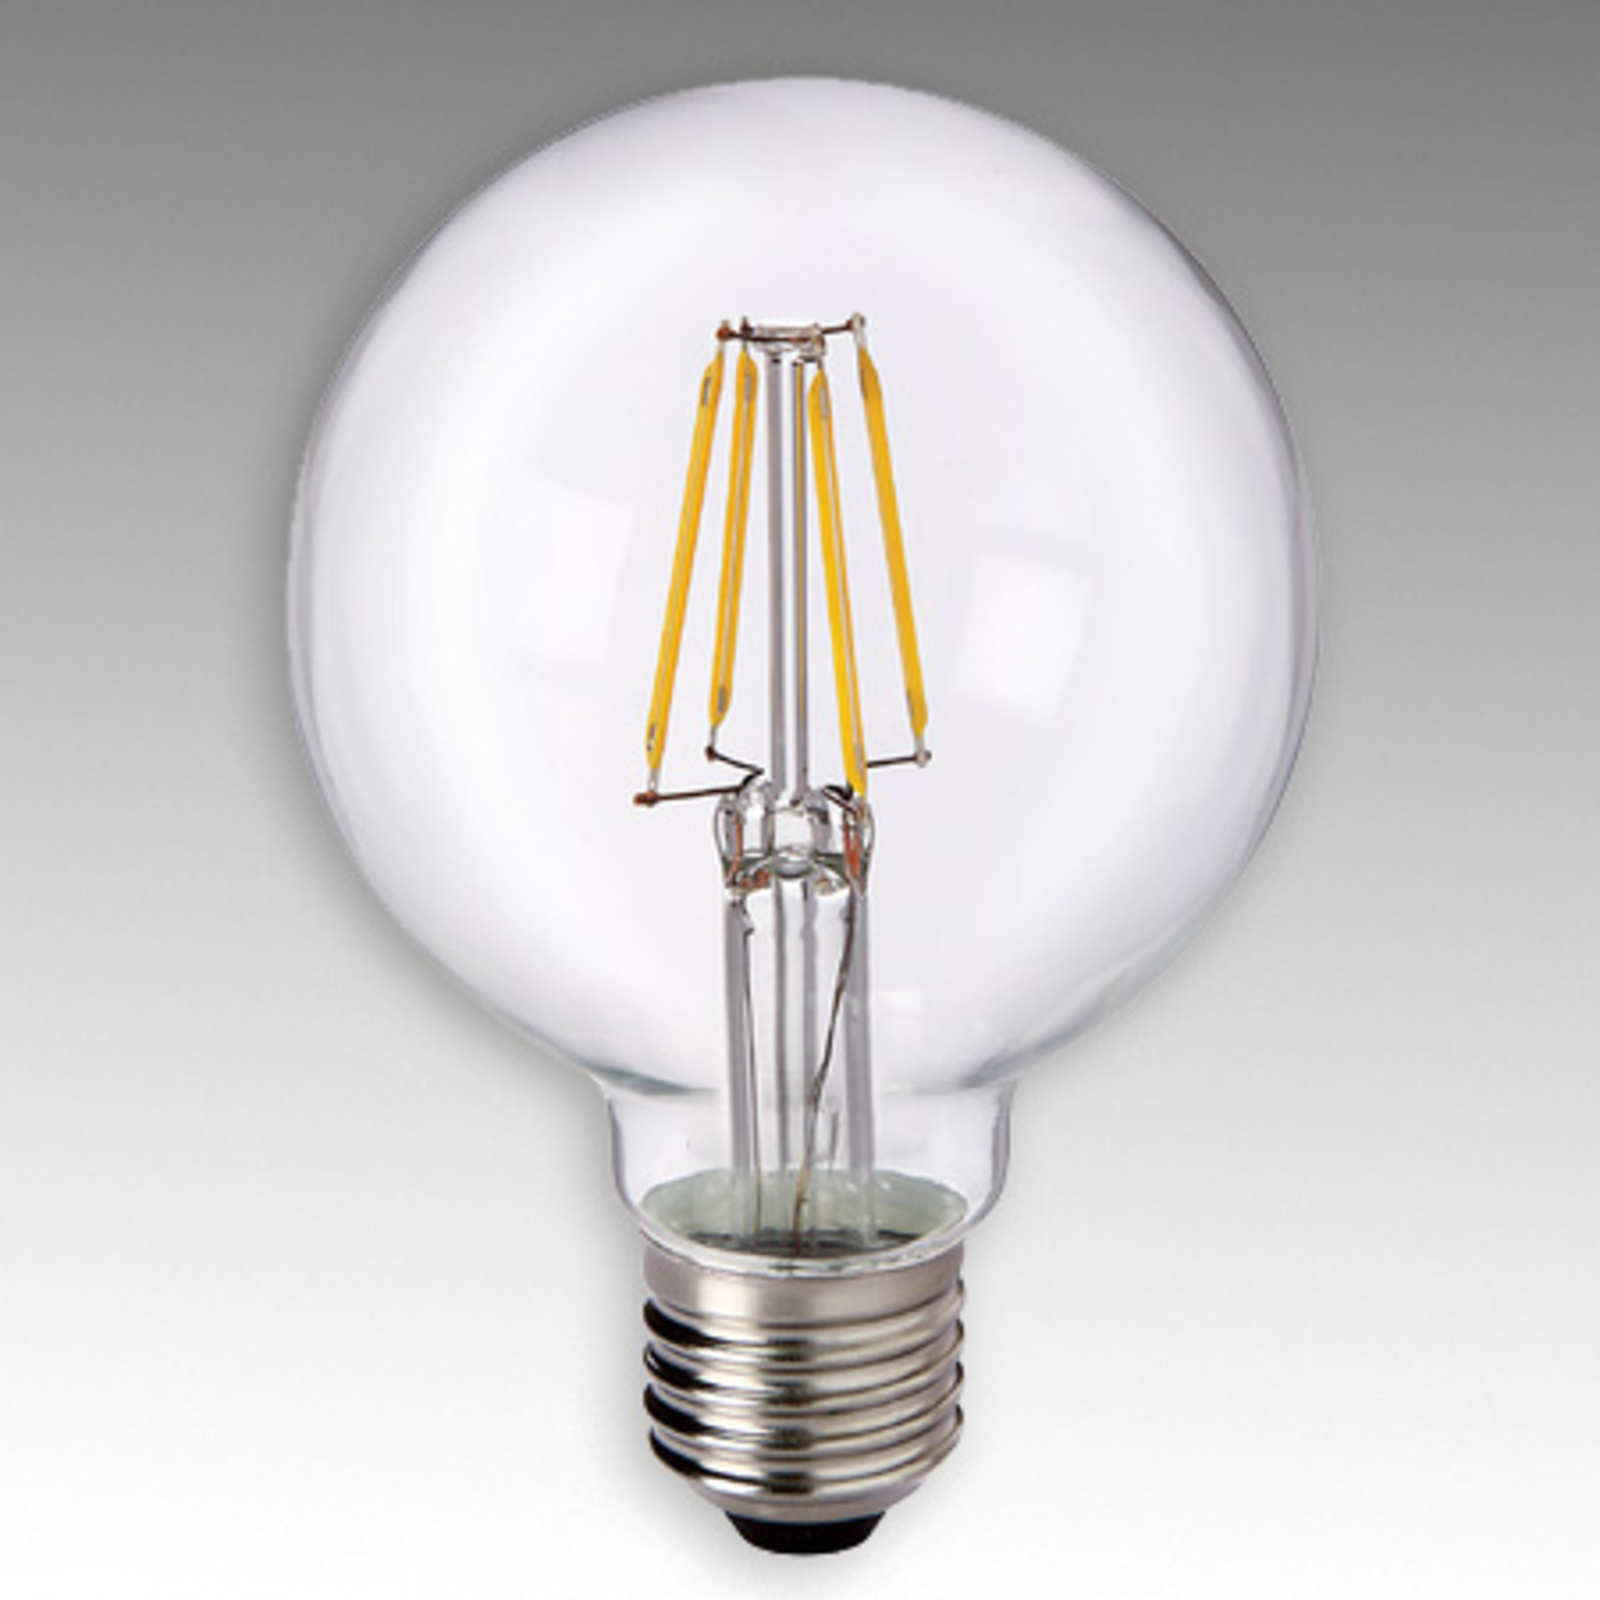 LED bollamp E27 4,5W 827 G80 filament helder